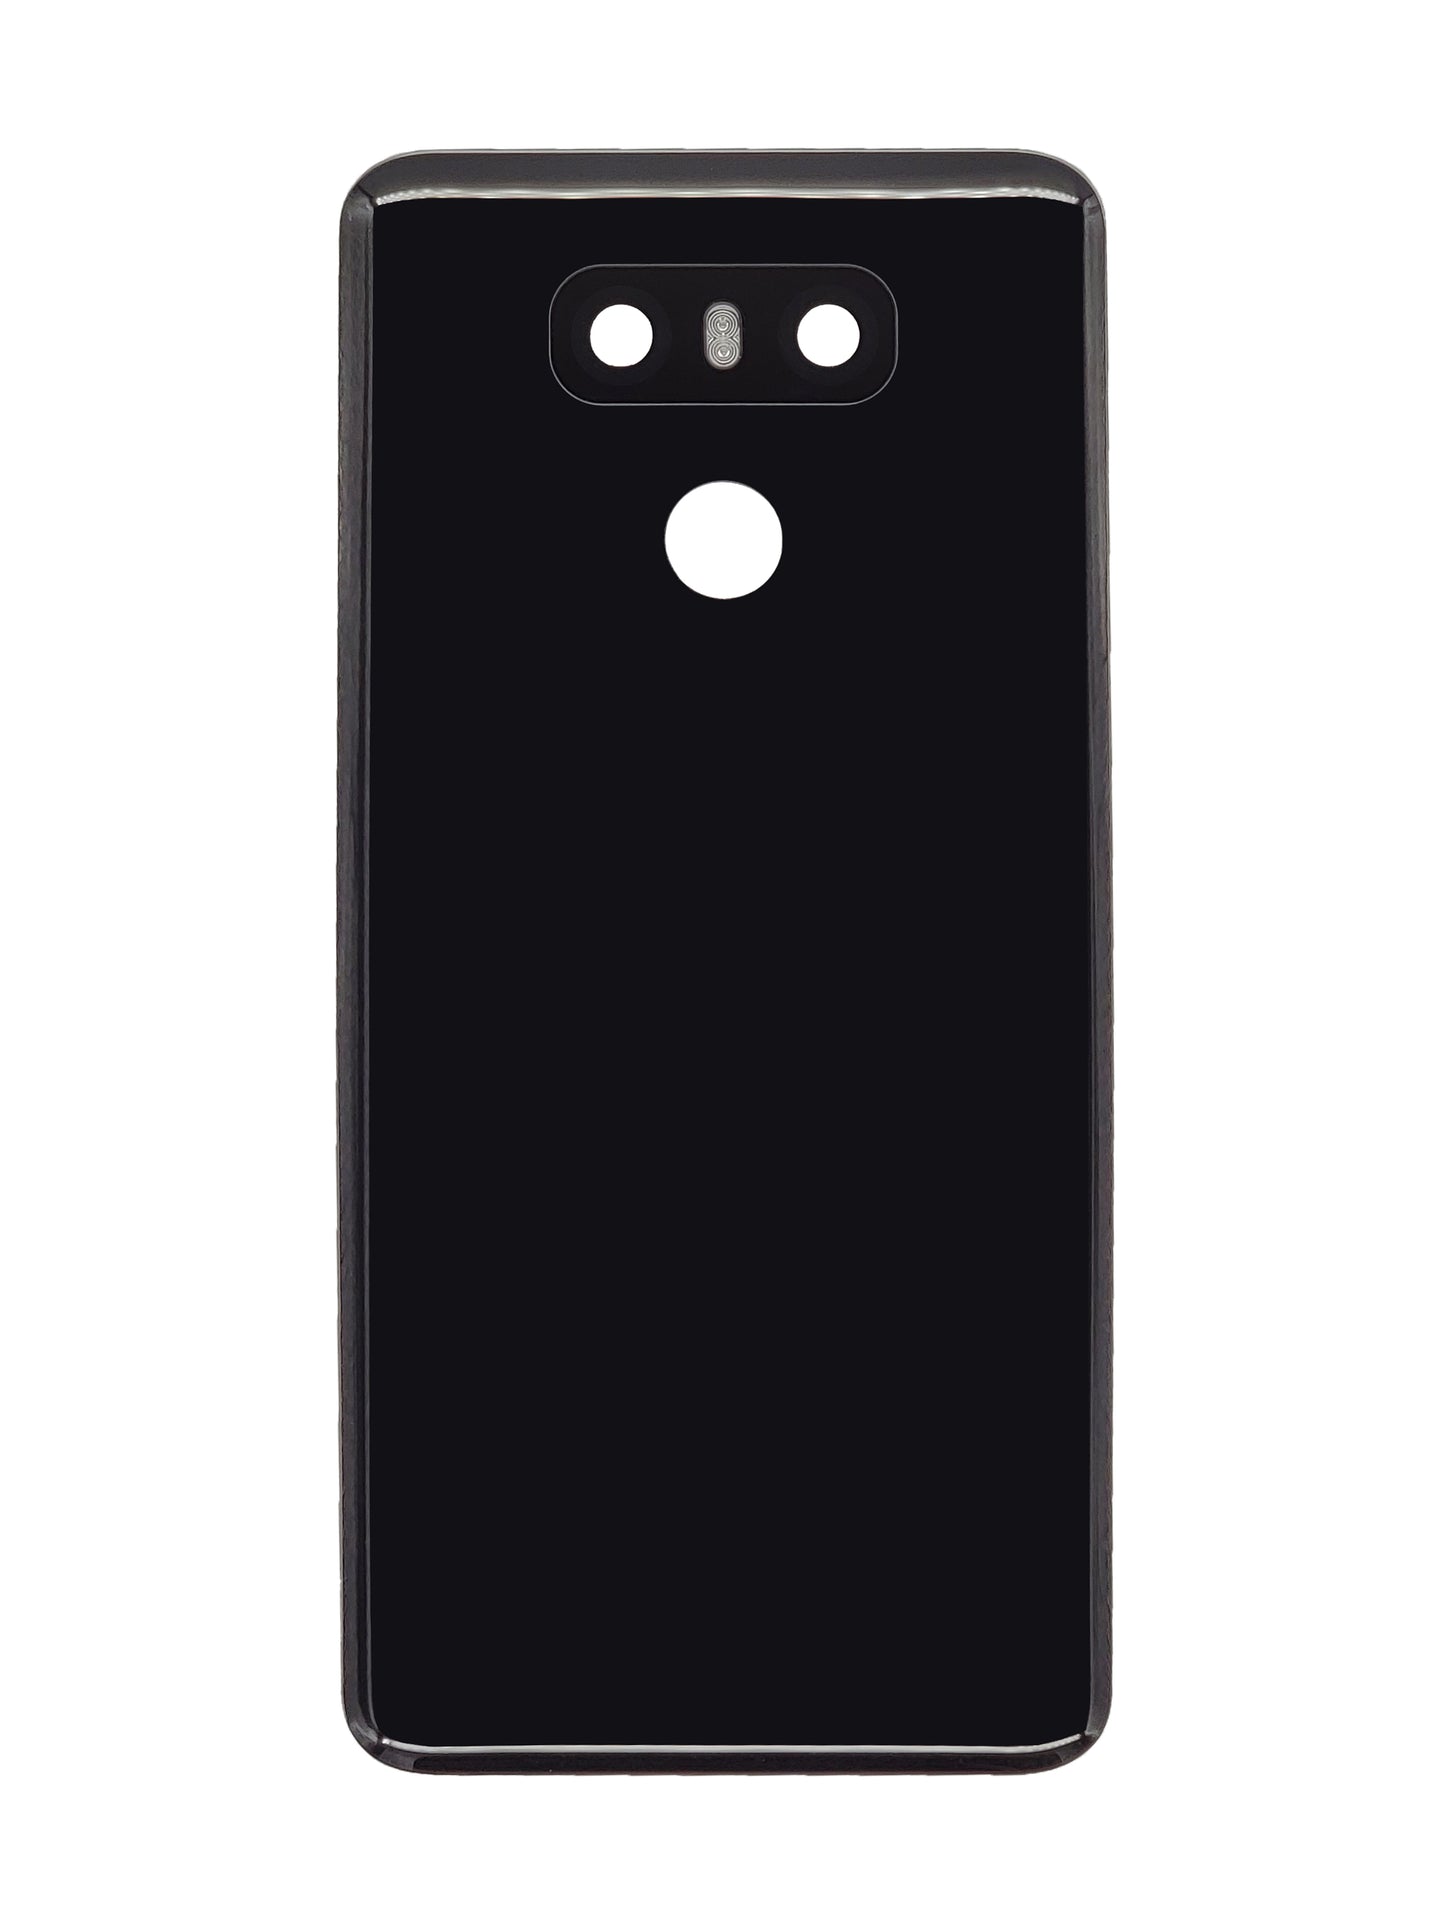 LGG G6 Back Cover (Black)